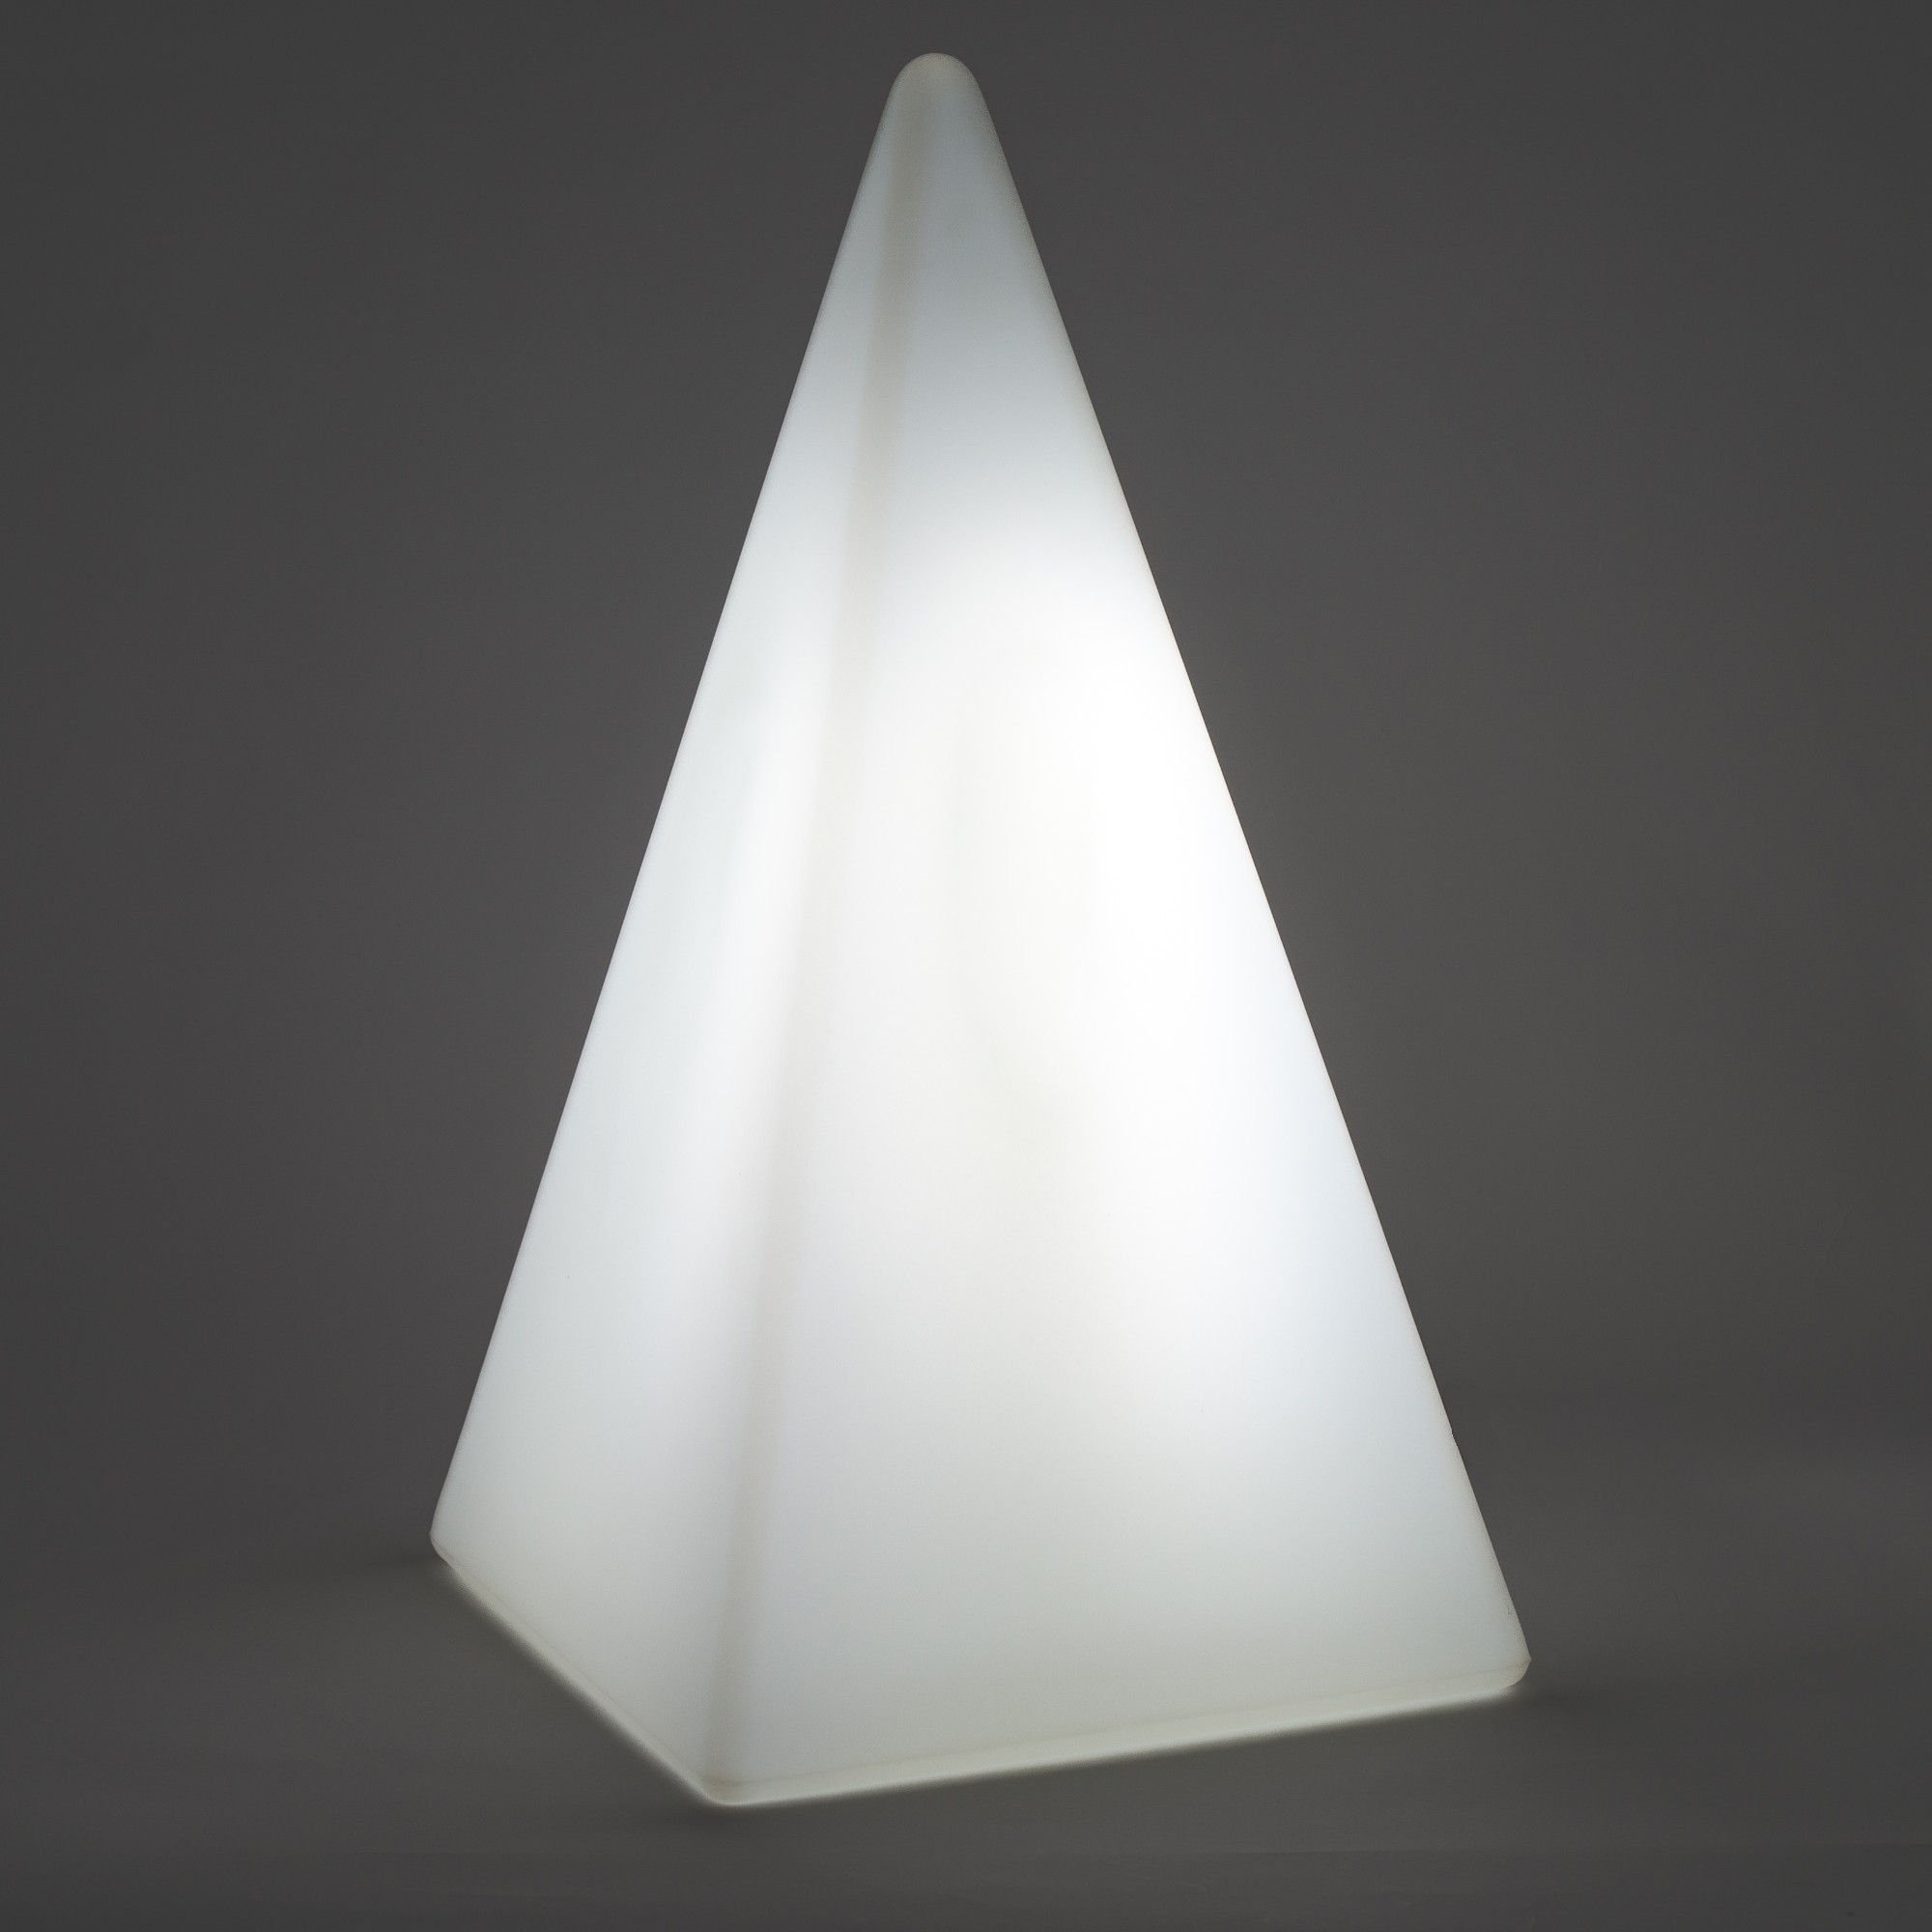 70107 Standleuchte Pyramide 36 cm der Firma EPSTEIN Design Leuchten